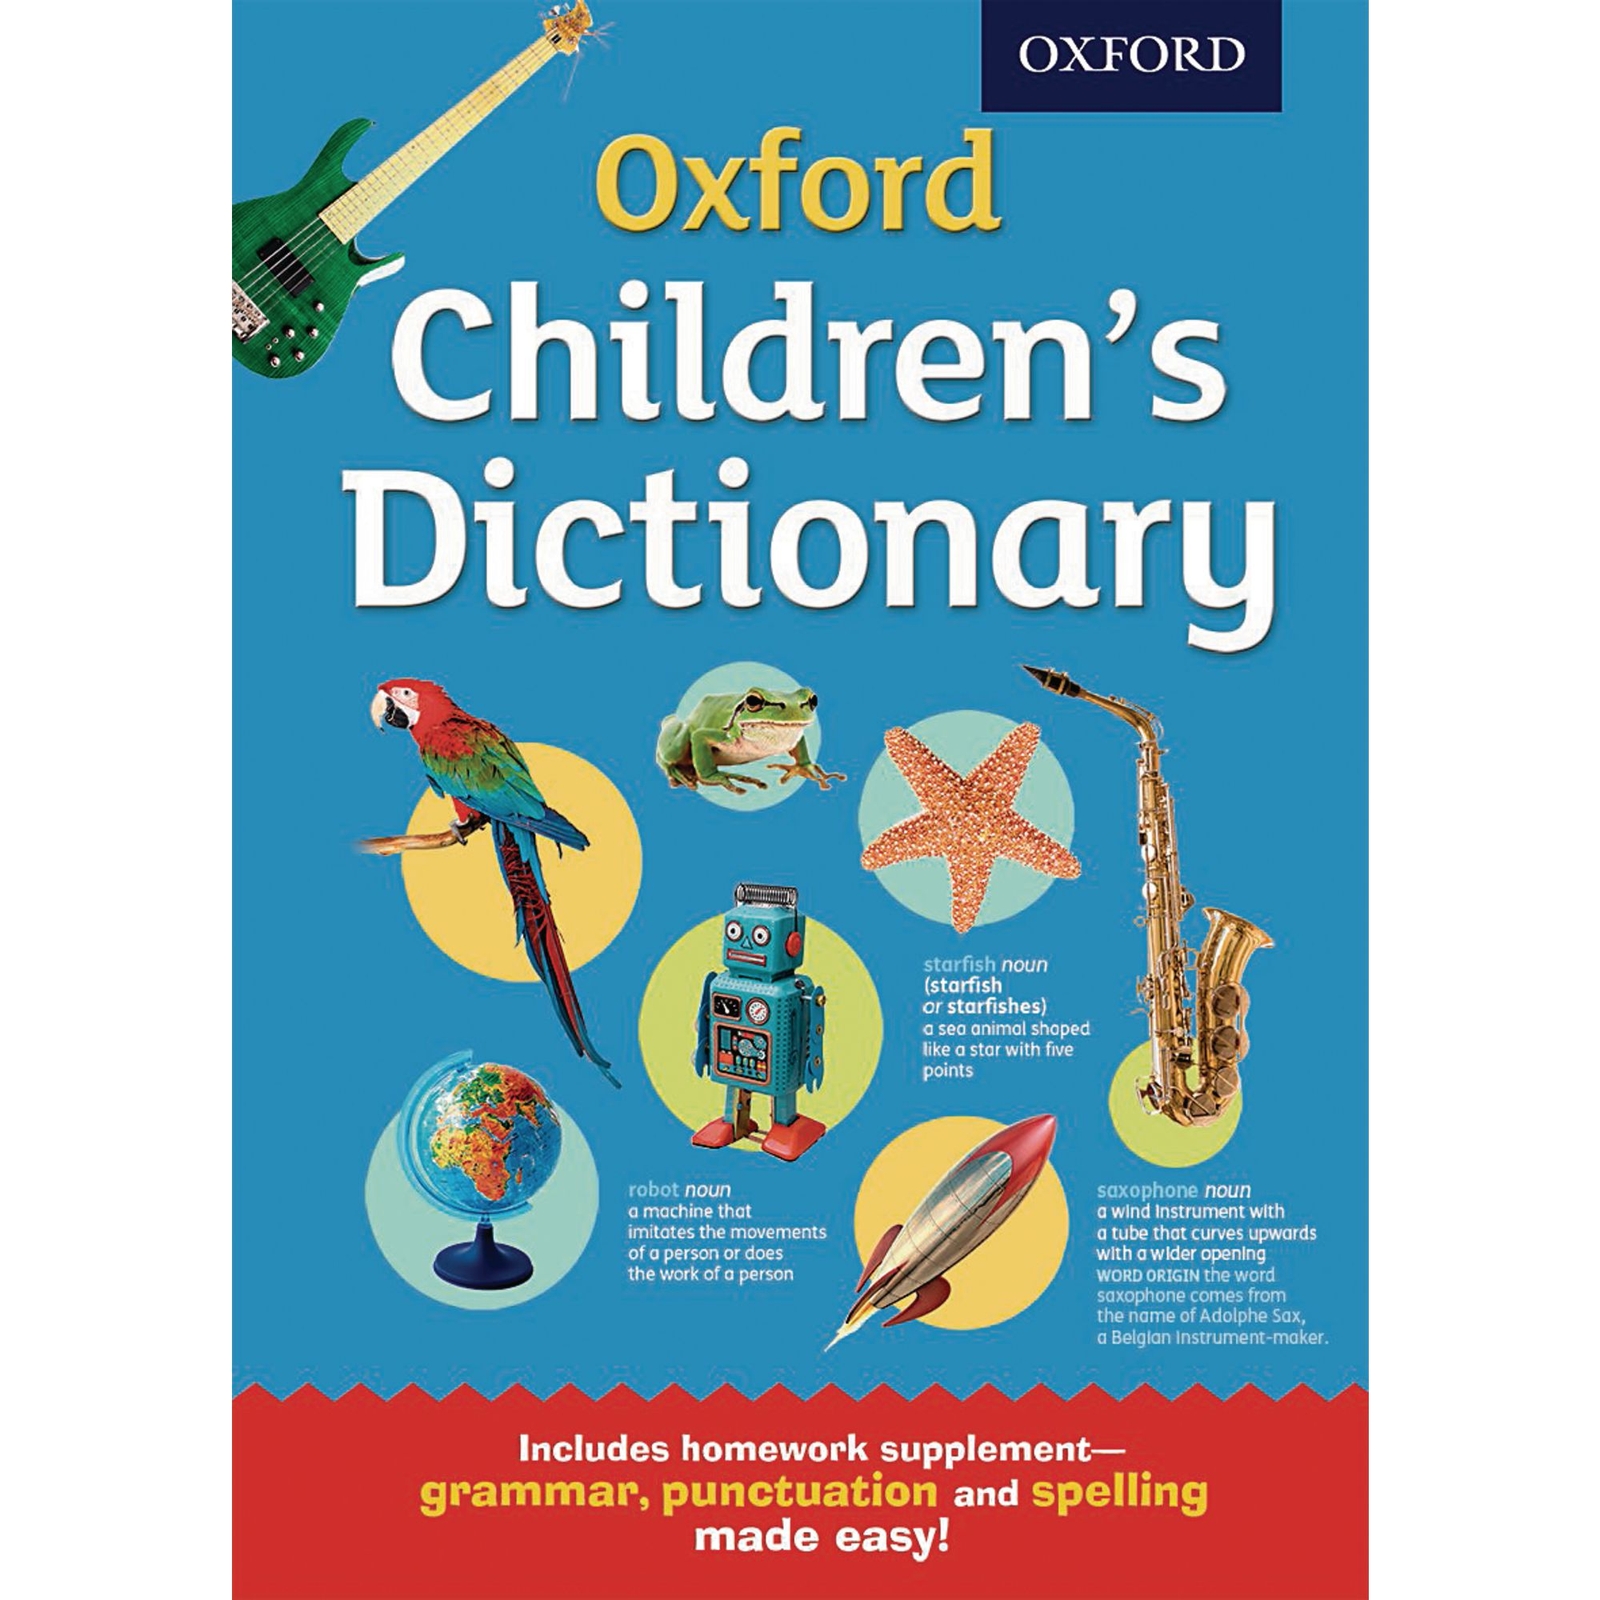 Oxford Children